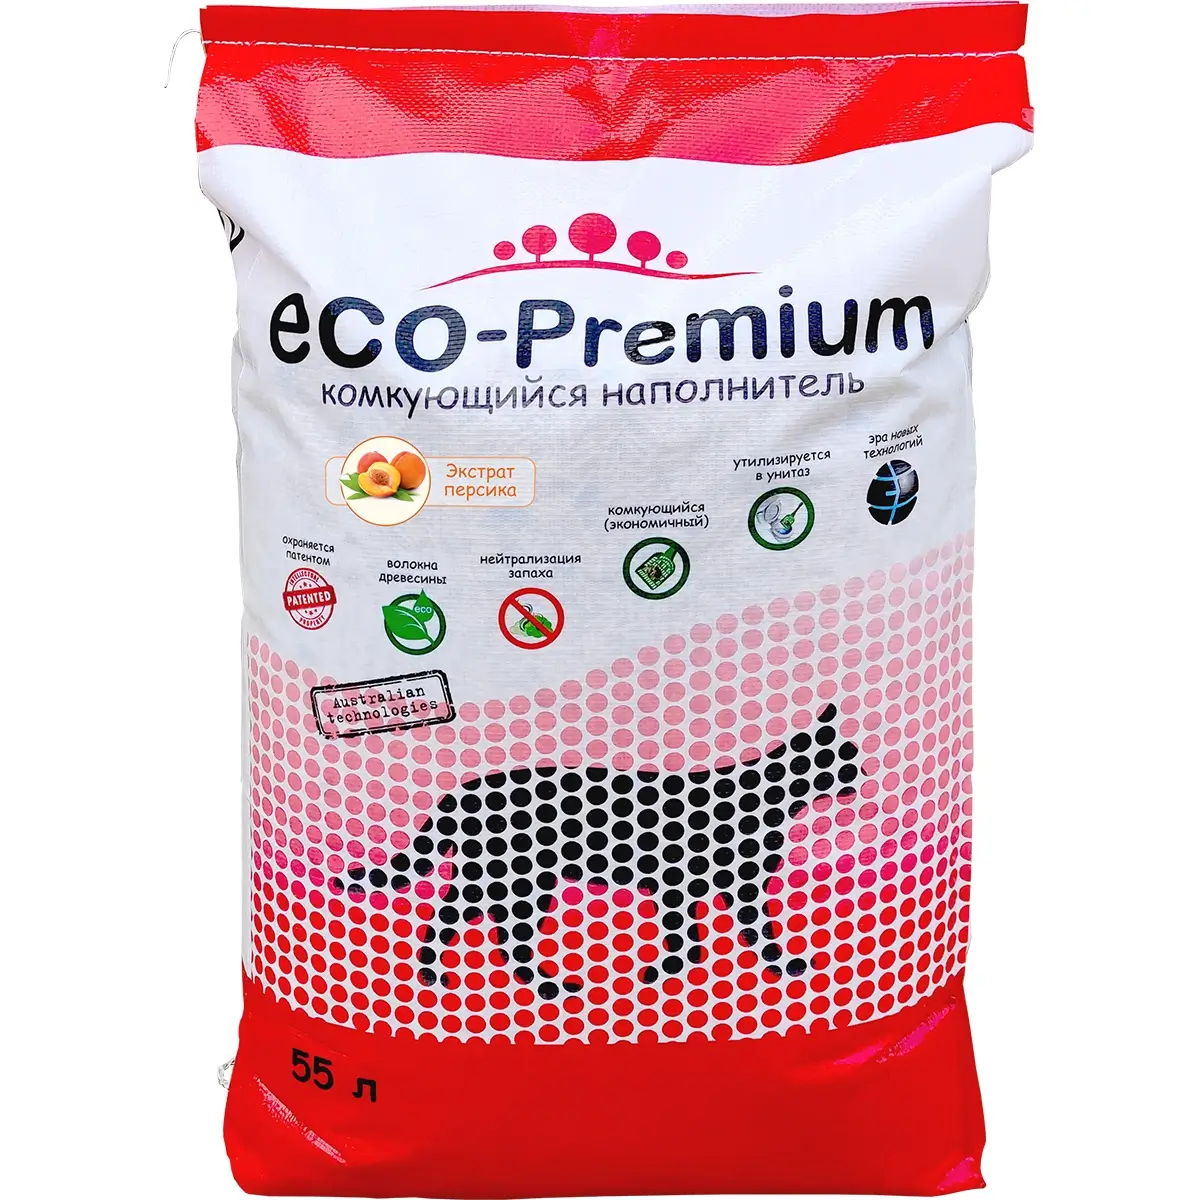 Наполнитель ECO-Premium для кошачьего туалета (Древесный комкующийся с ароматом персика, 55л)